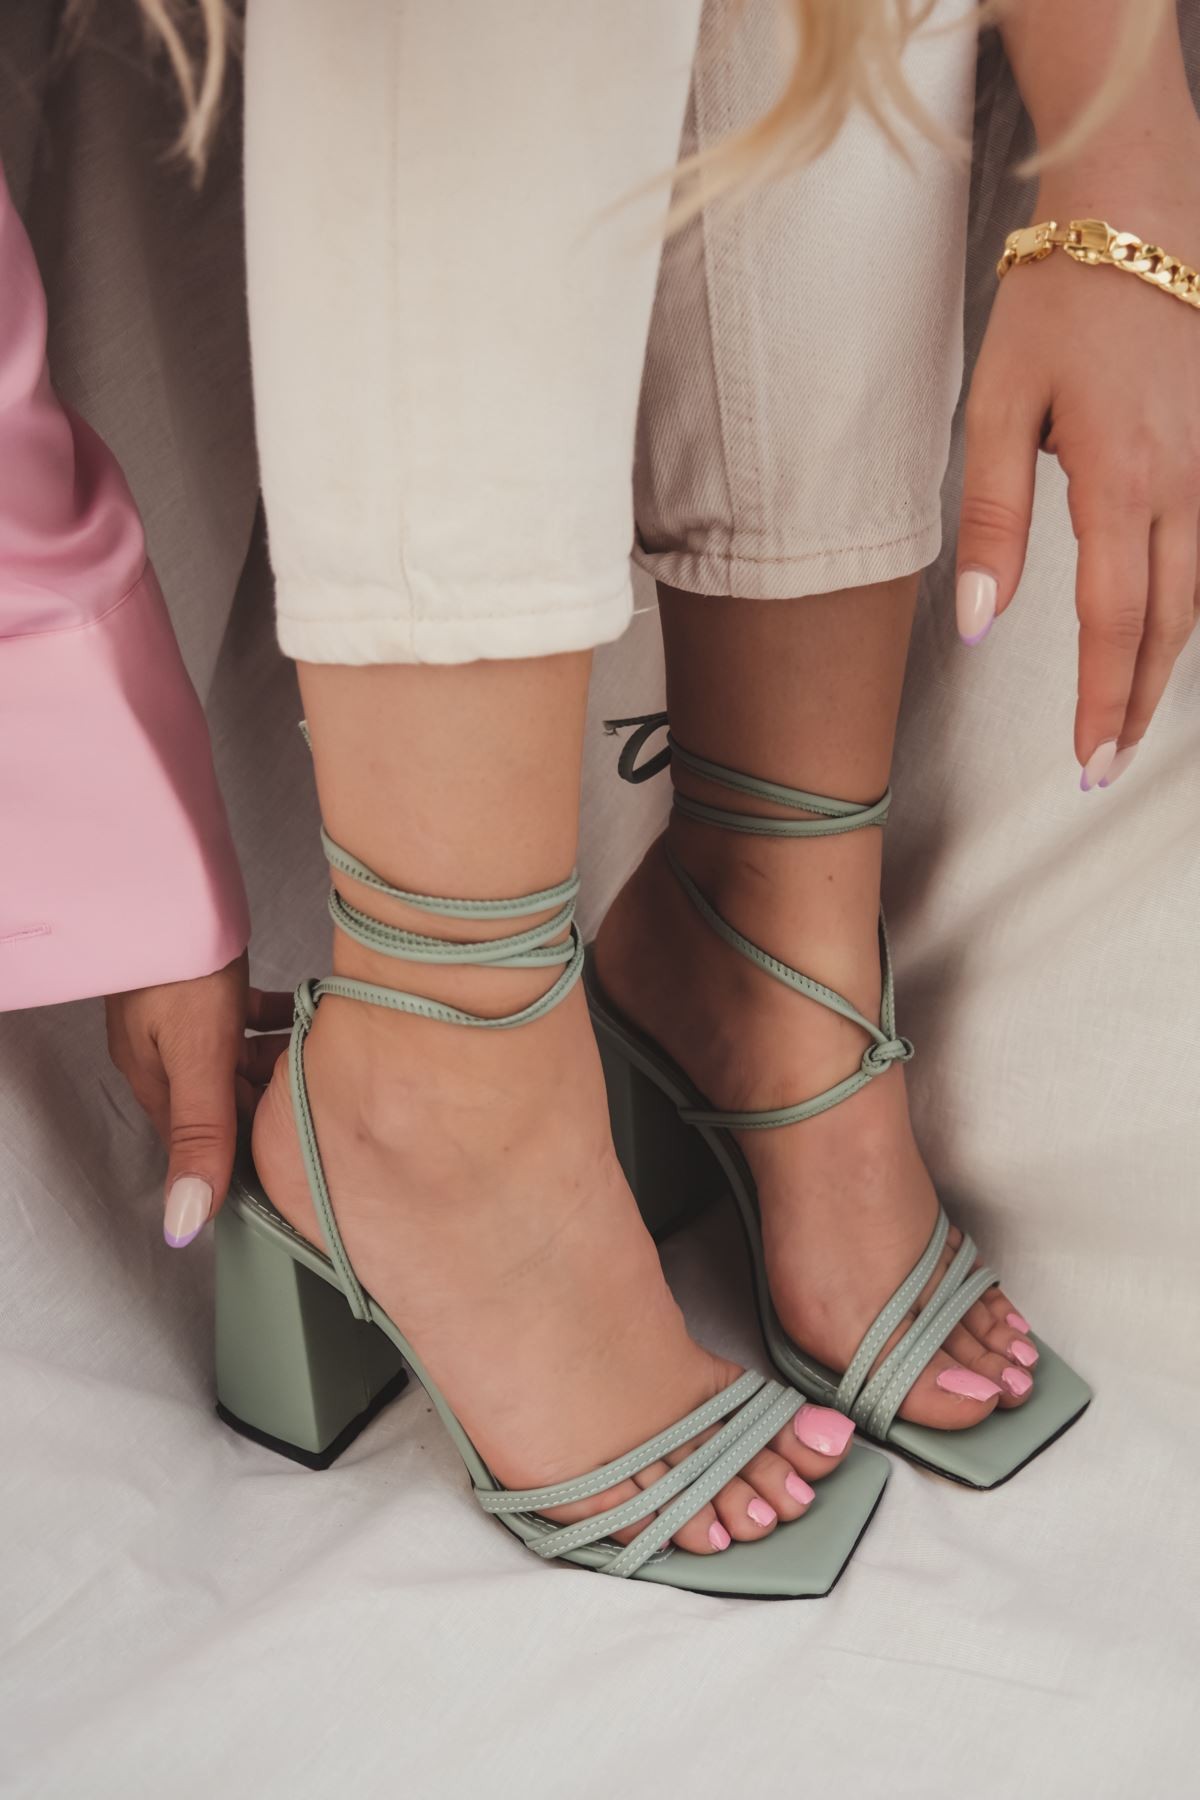 Mosena Mat Deri Bilekten Bağlama Detaylı Yüksek Topuklu Ayakkabı Mint Yeşili